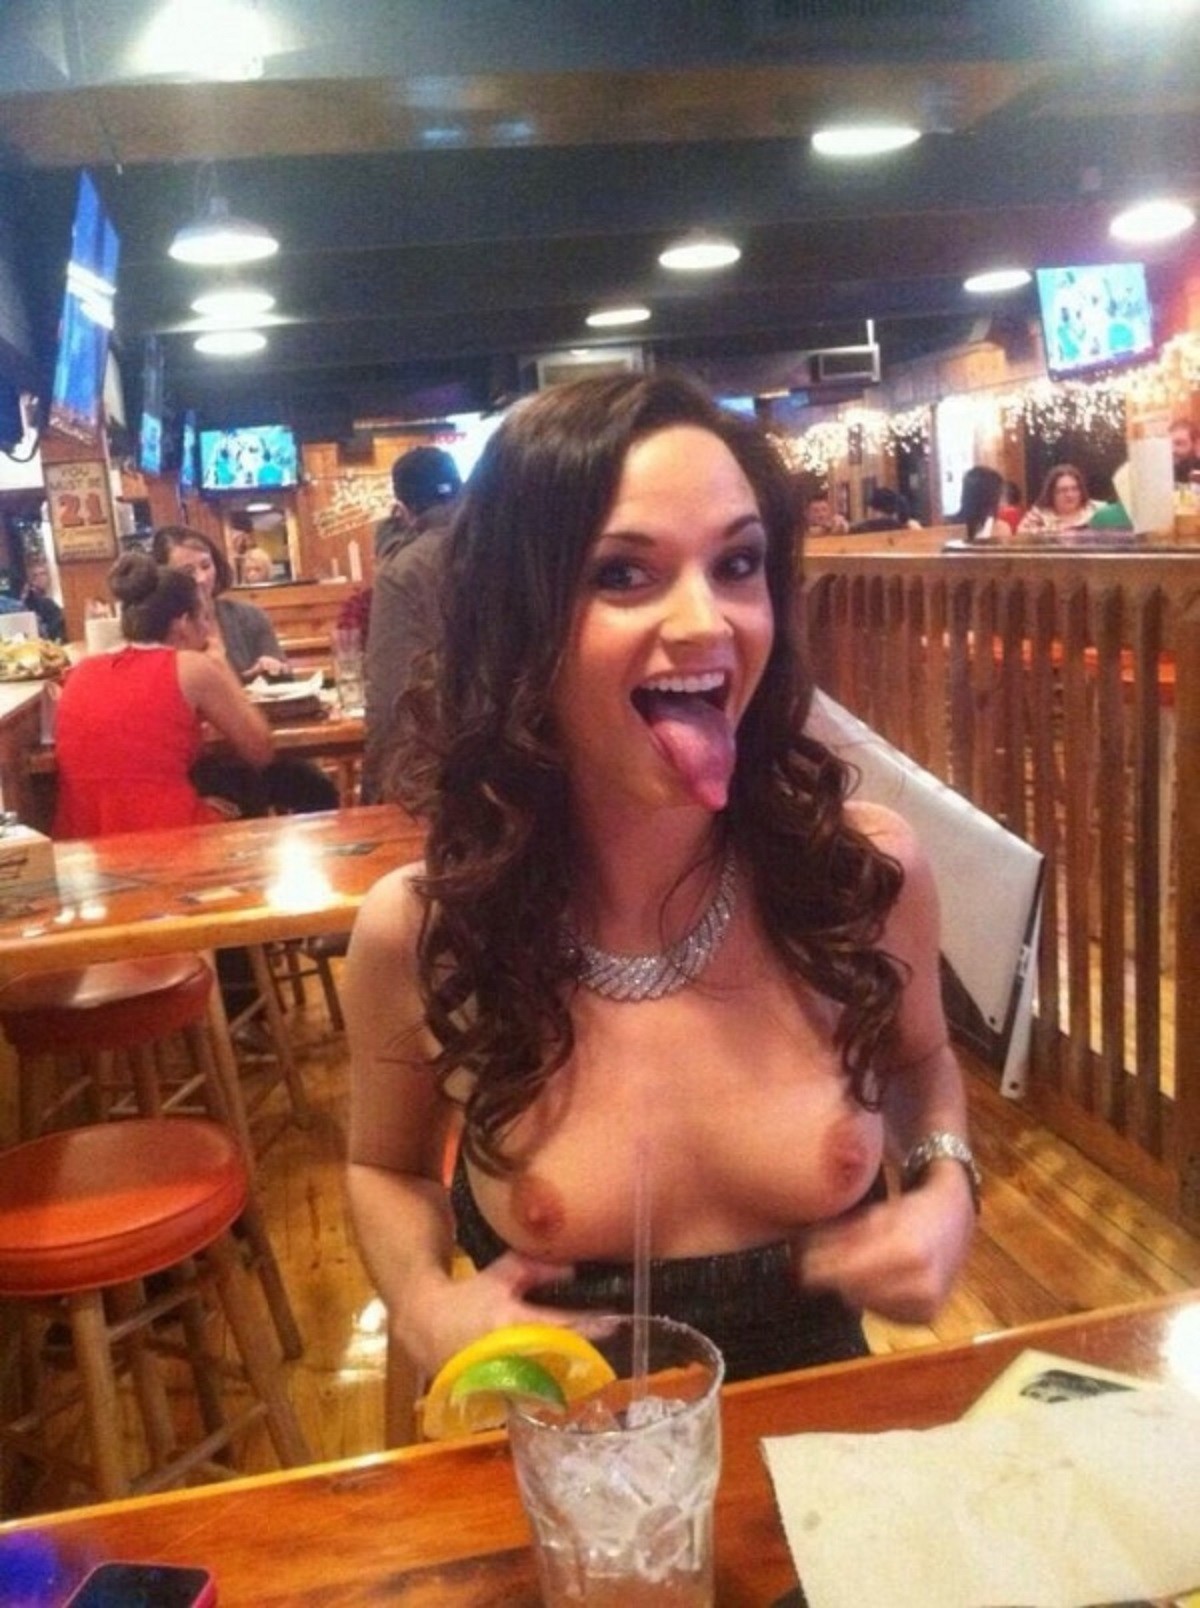 Girl flashes long tongue and boobs at the bar.